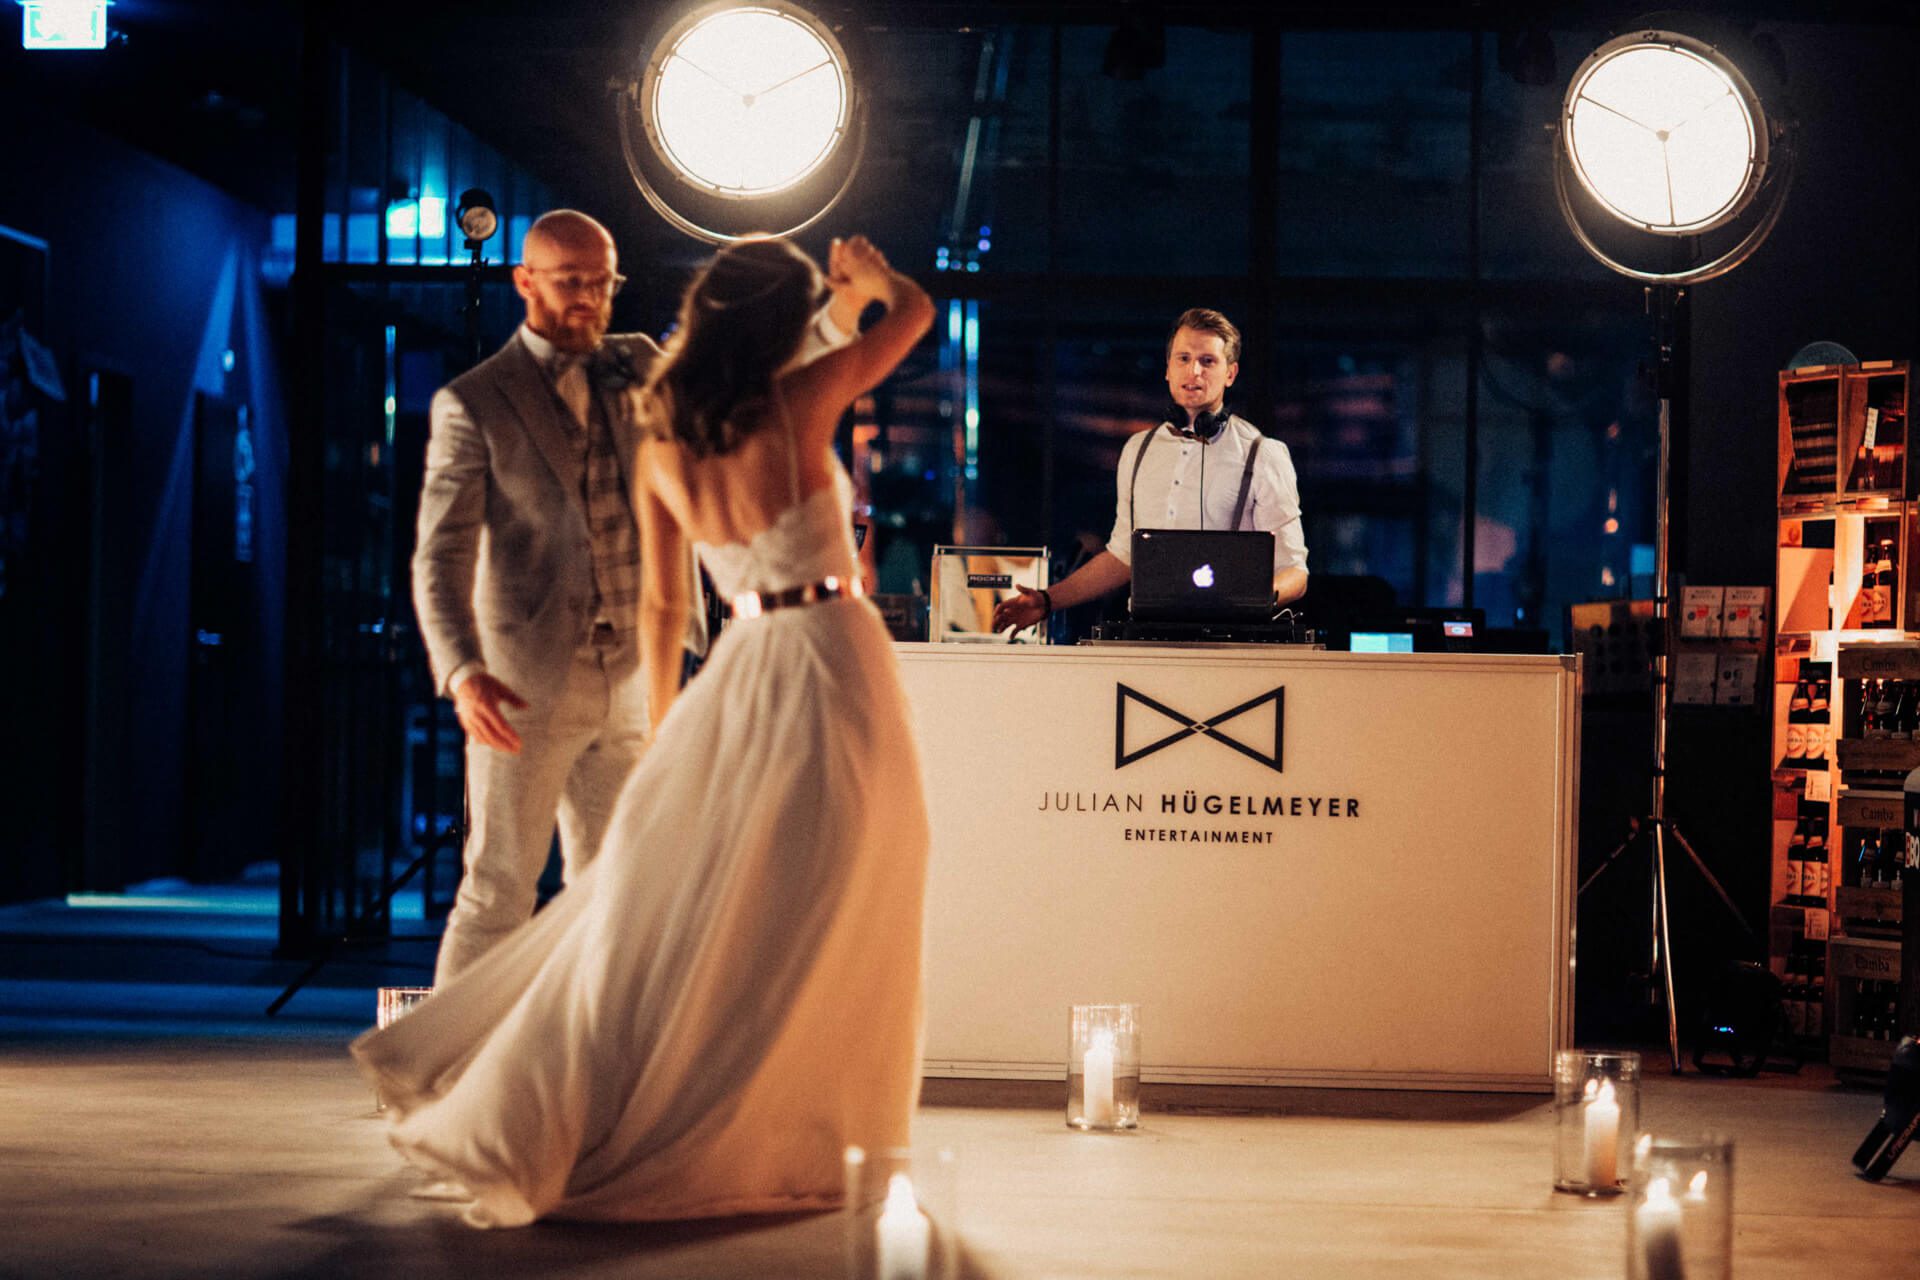 DJ Q-logne - Hochzeit & Event DJ aus dem Rheinland